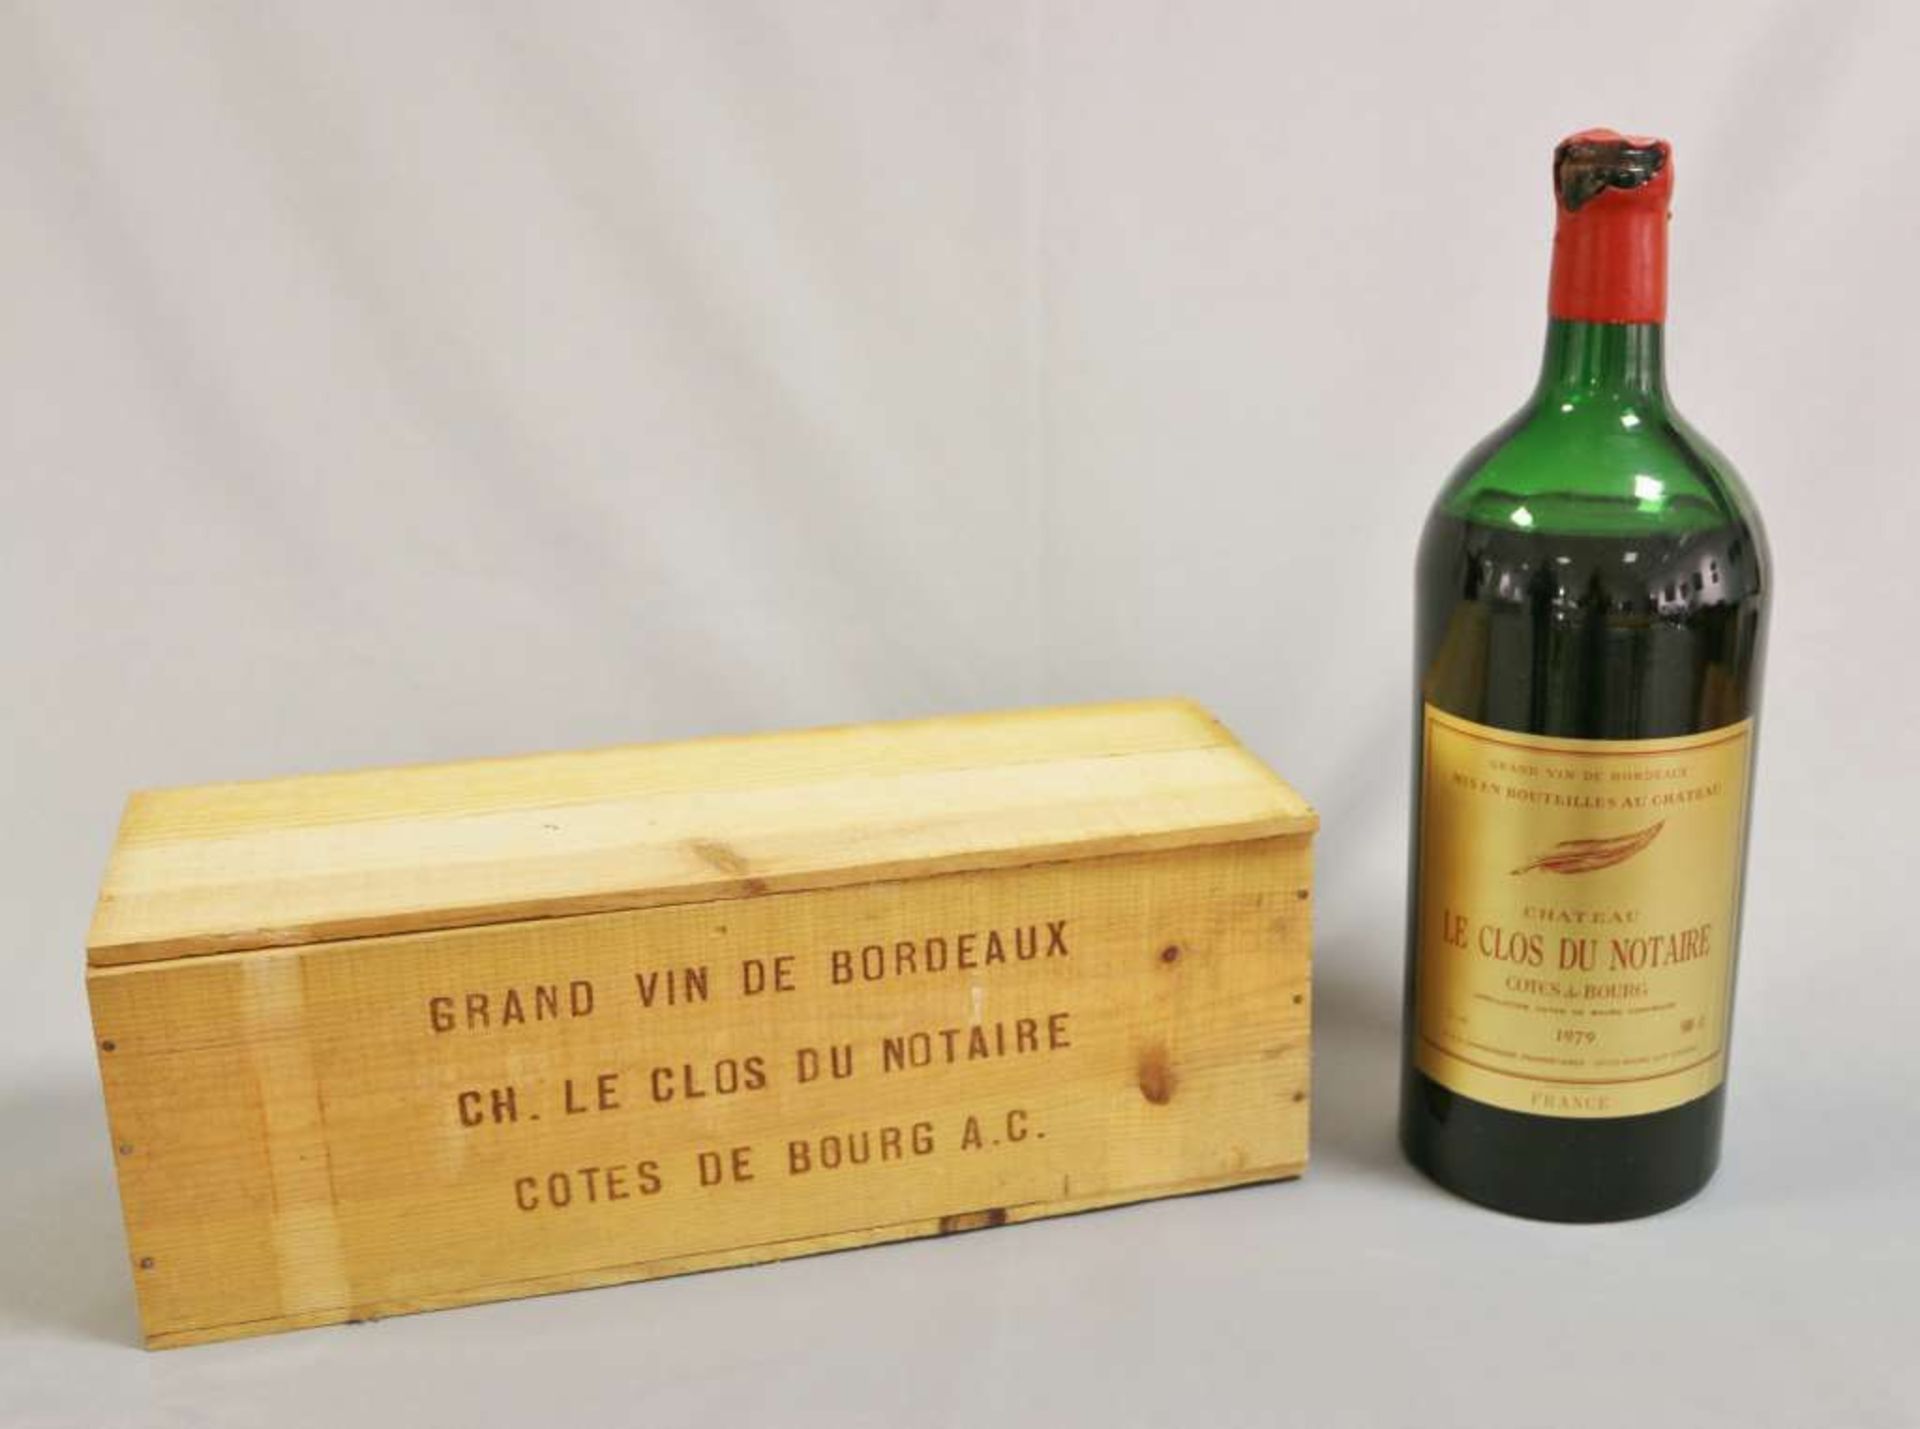 Rotwein, Flasche Château Clos du Notaire Côtes de Bourg 1979, 500 cl, Wachssiegel beschädigt.